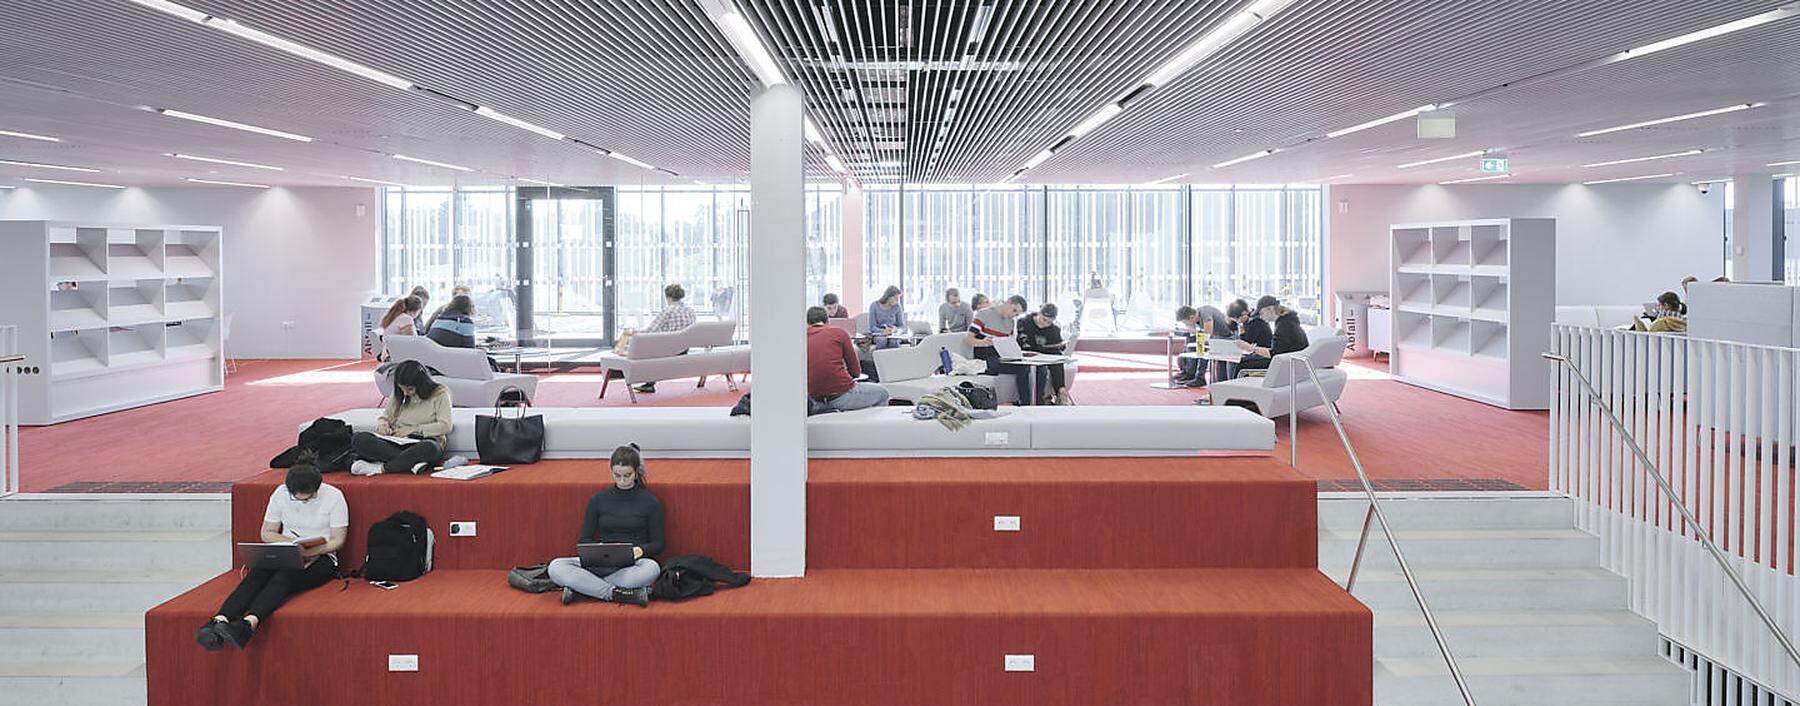 Die neue Universitätsbibliothek in Graz, ein moderner und zeitgemäßer „Wissensspeicher“.